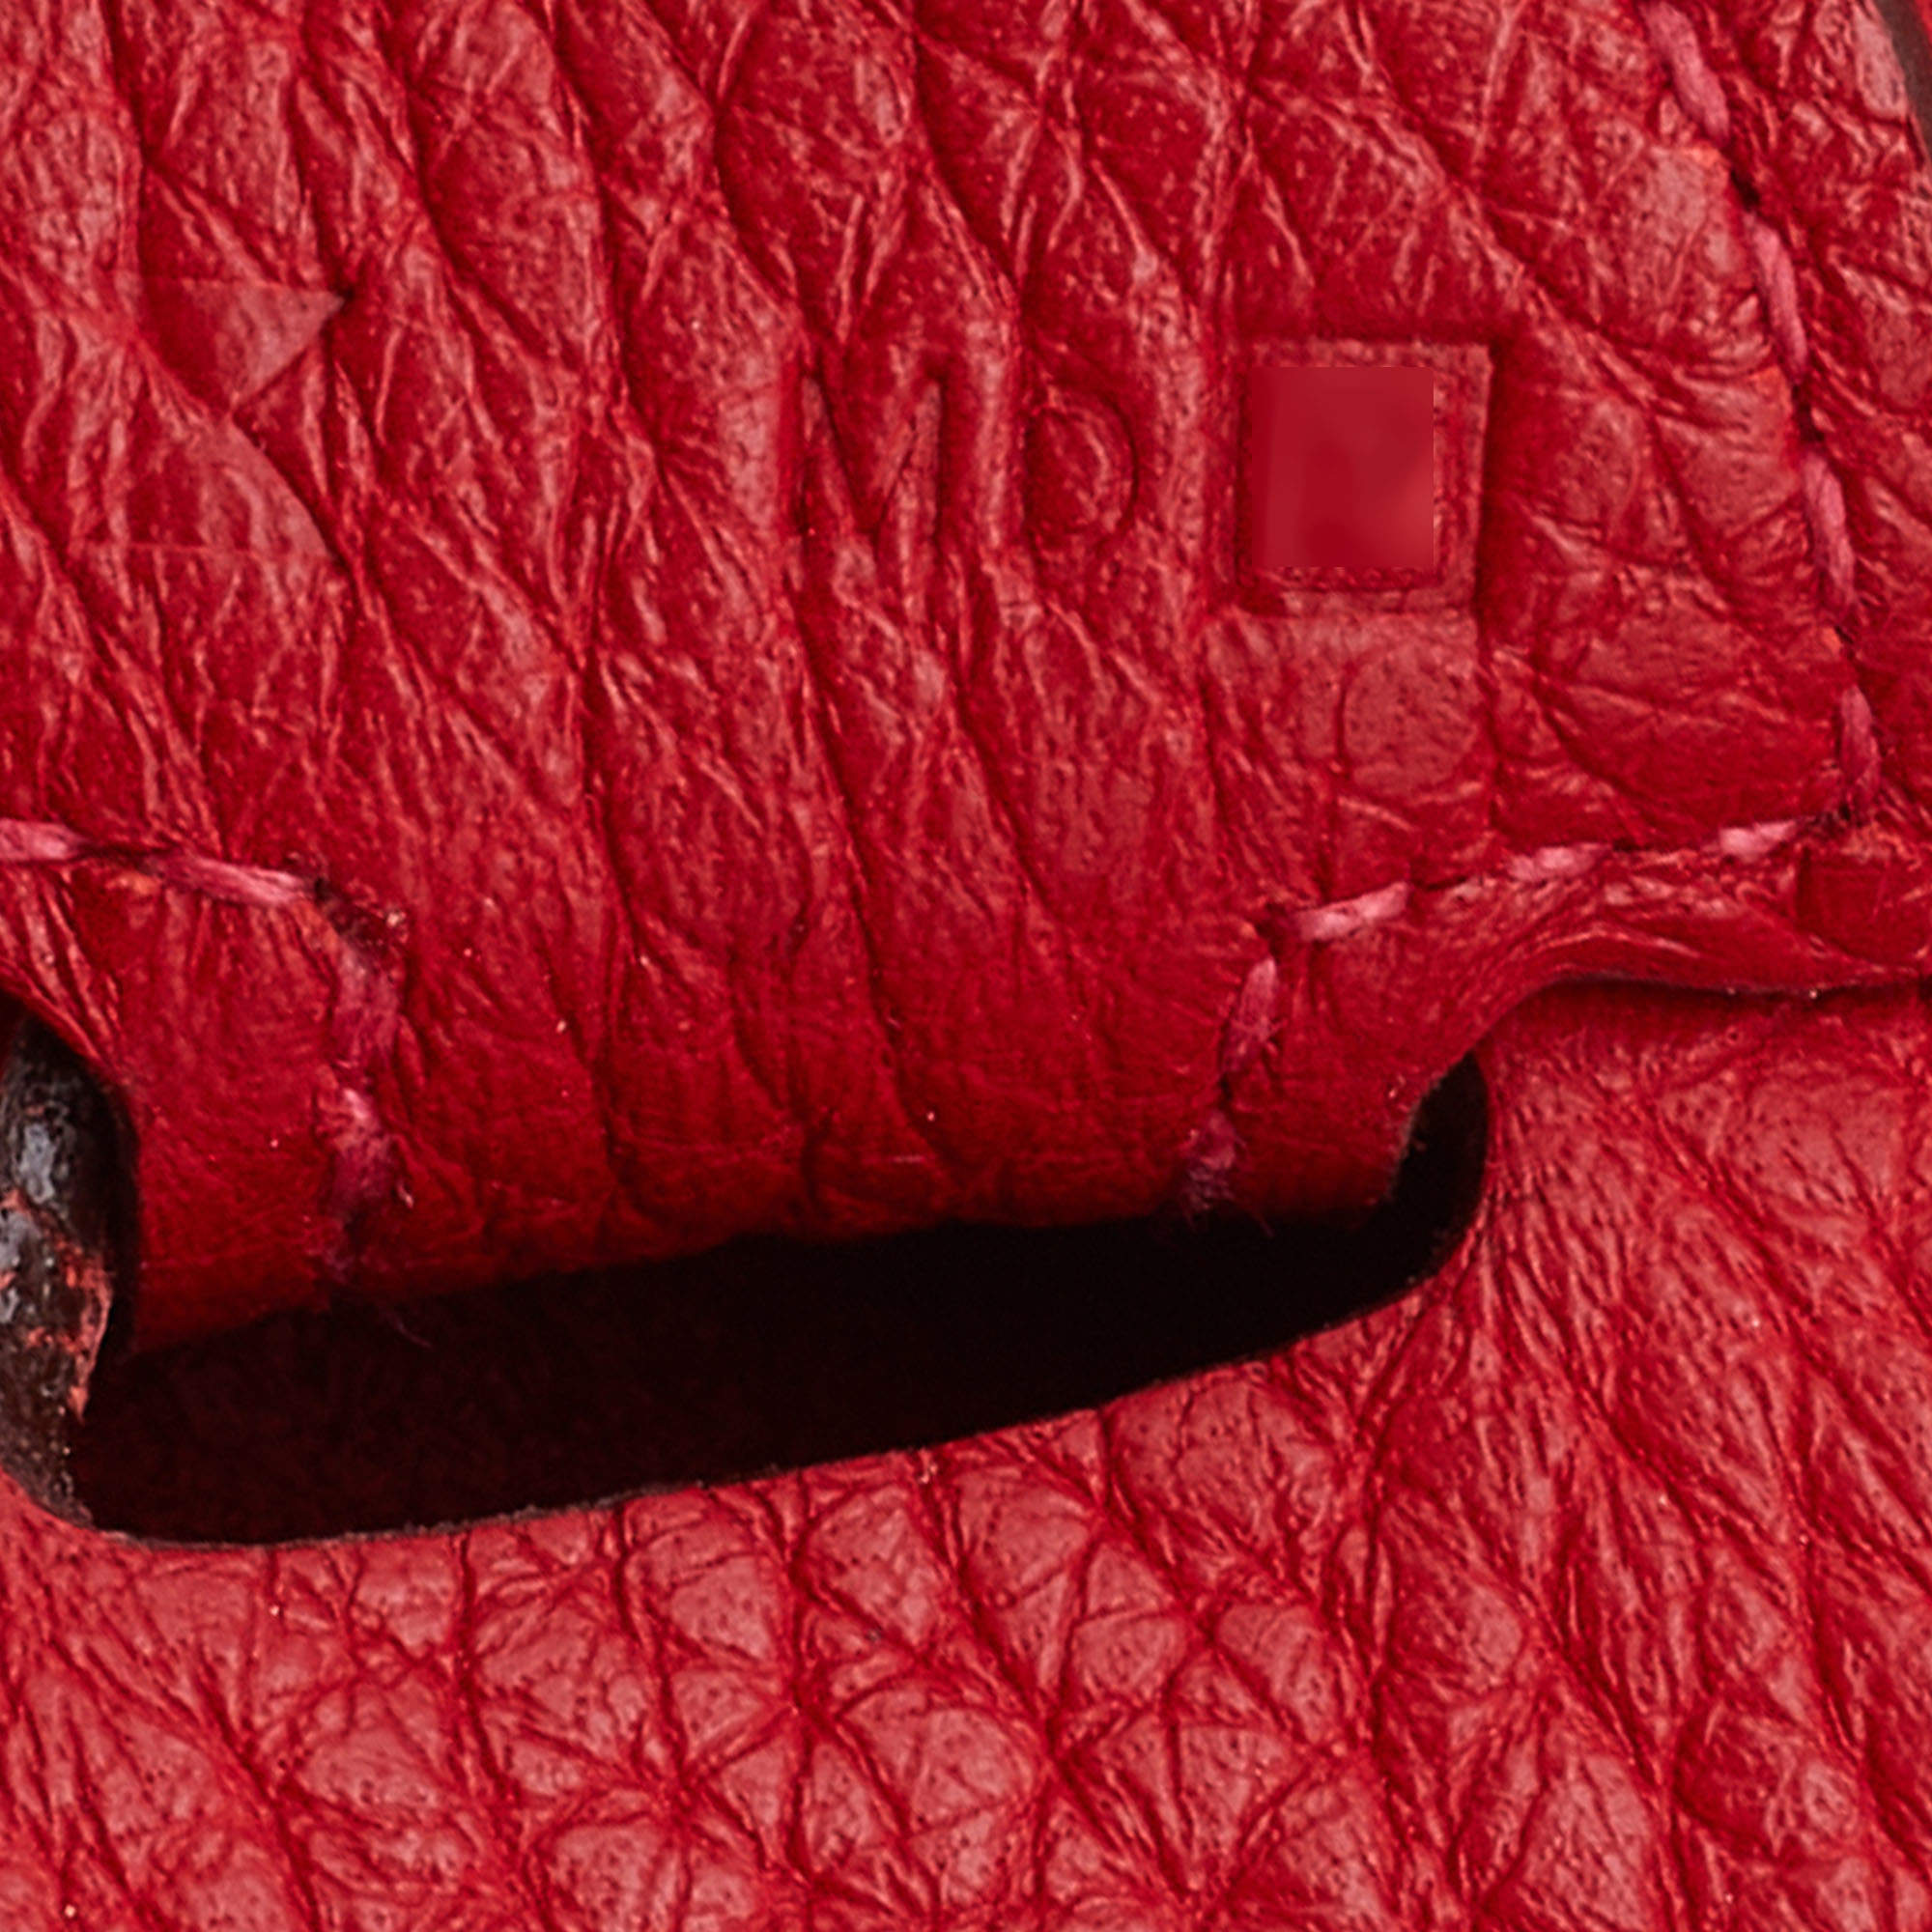 Hermes Rouge Casaque Clemency Leather Evelyne Bag